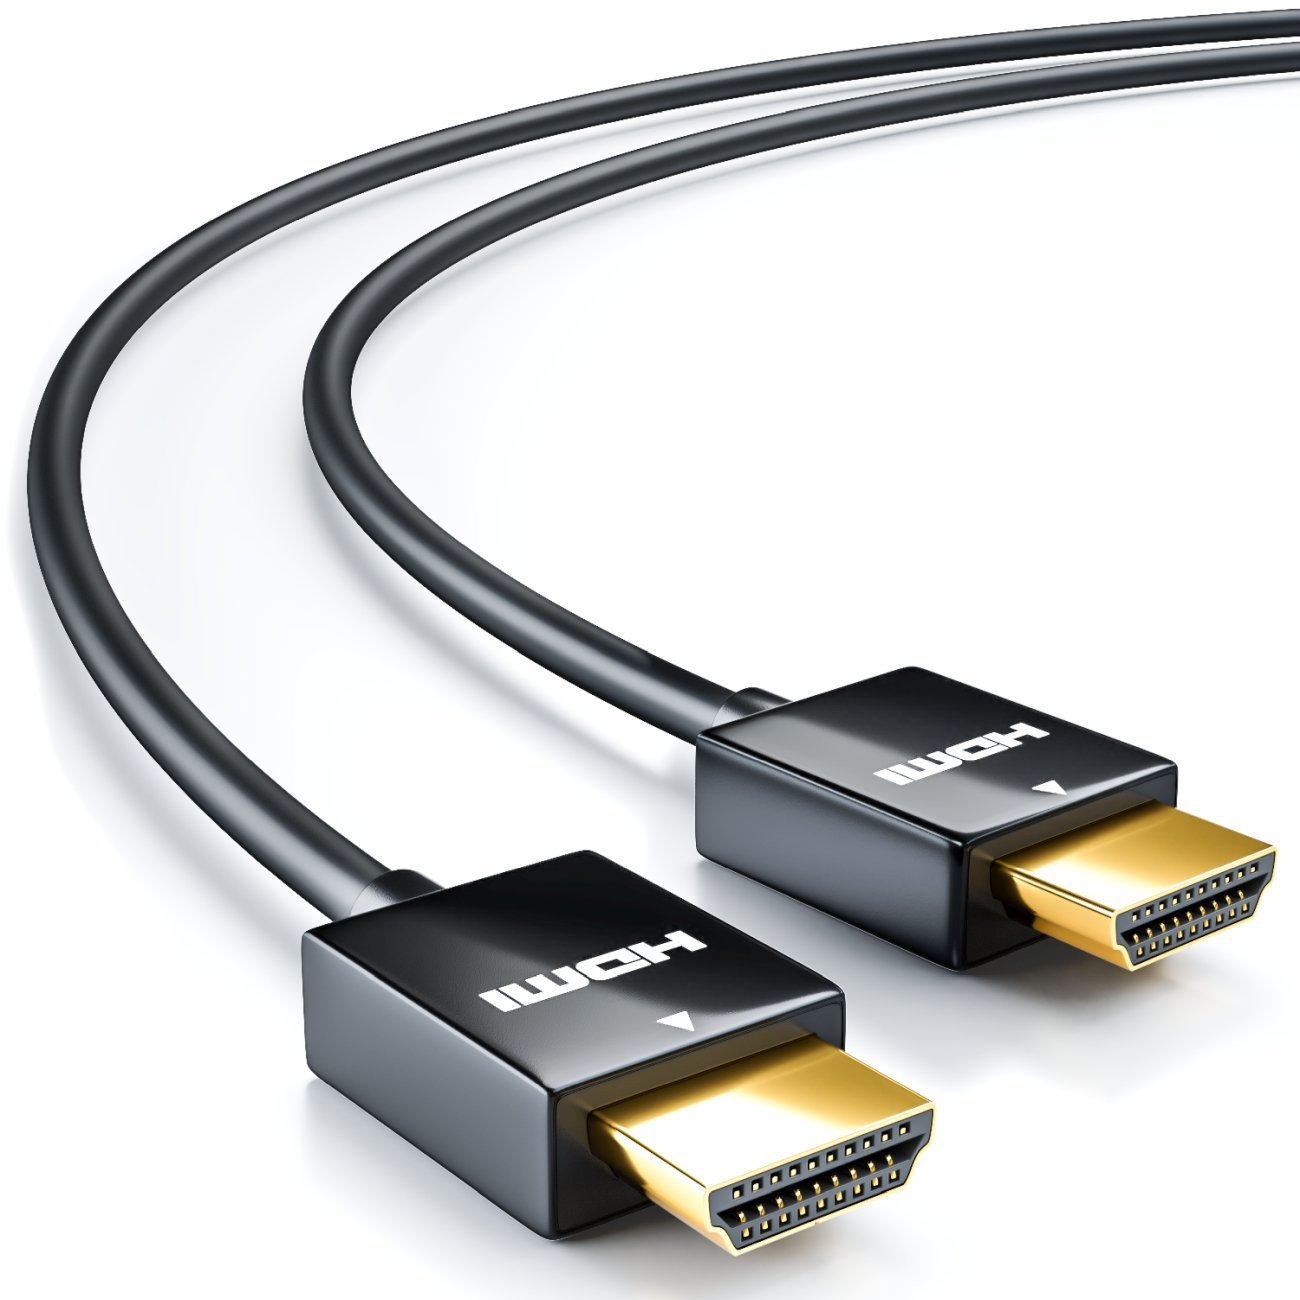 tijger Festival Omleiding deleyCON HDMI Kabel - SLIM - High Speed mit Ethernet - SUPER flexibel -  Schwarz - deleyCON